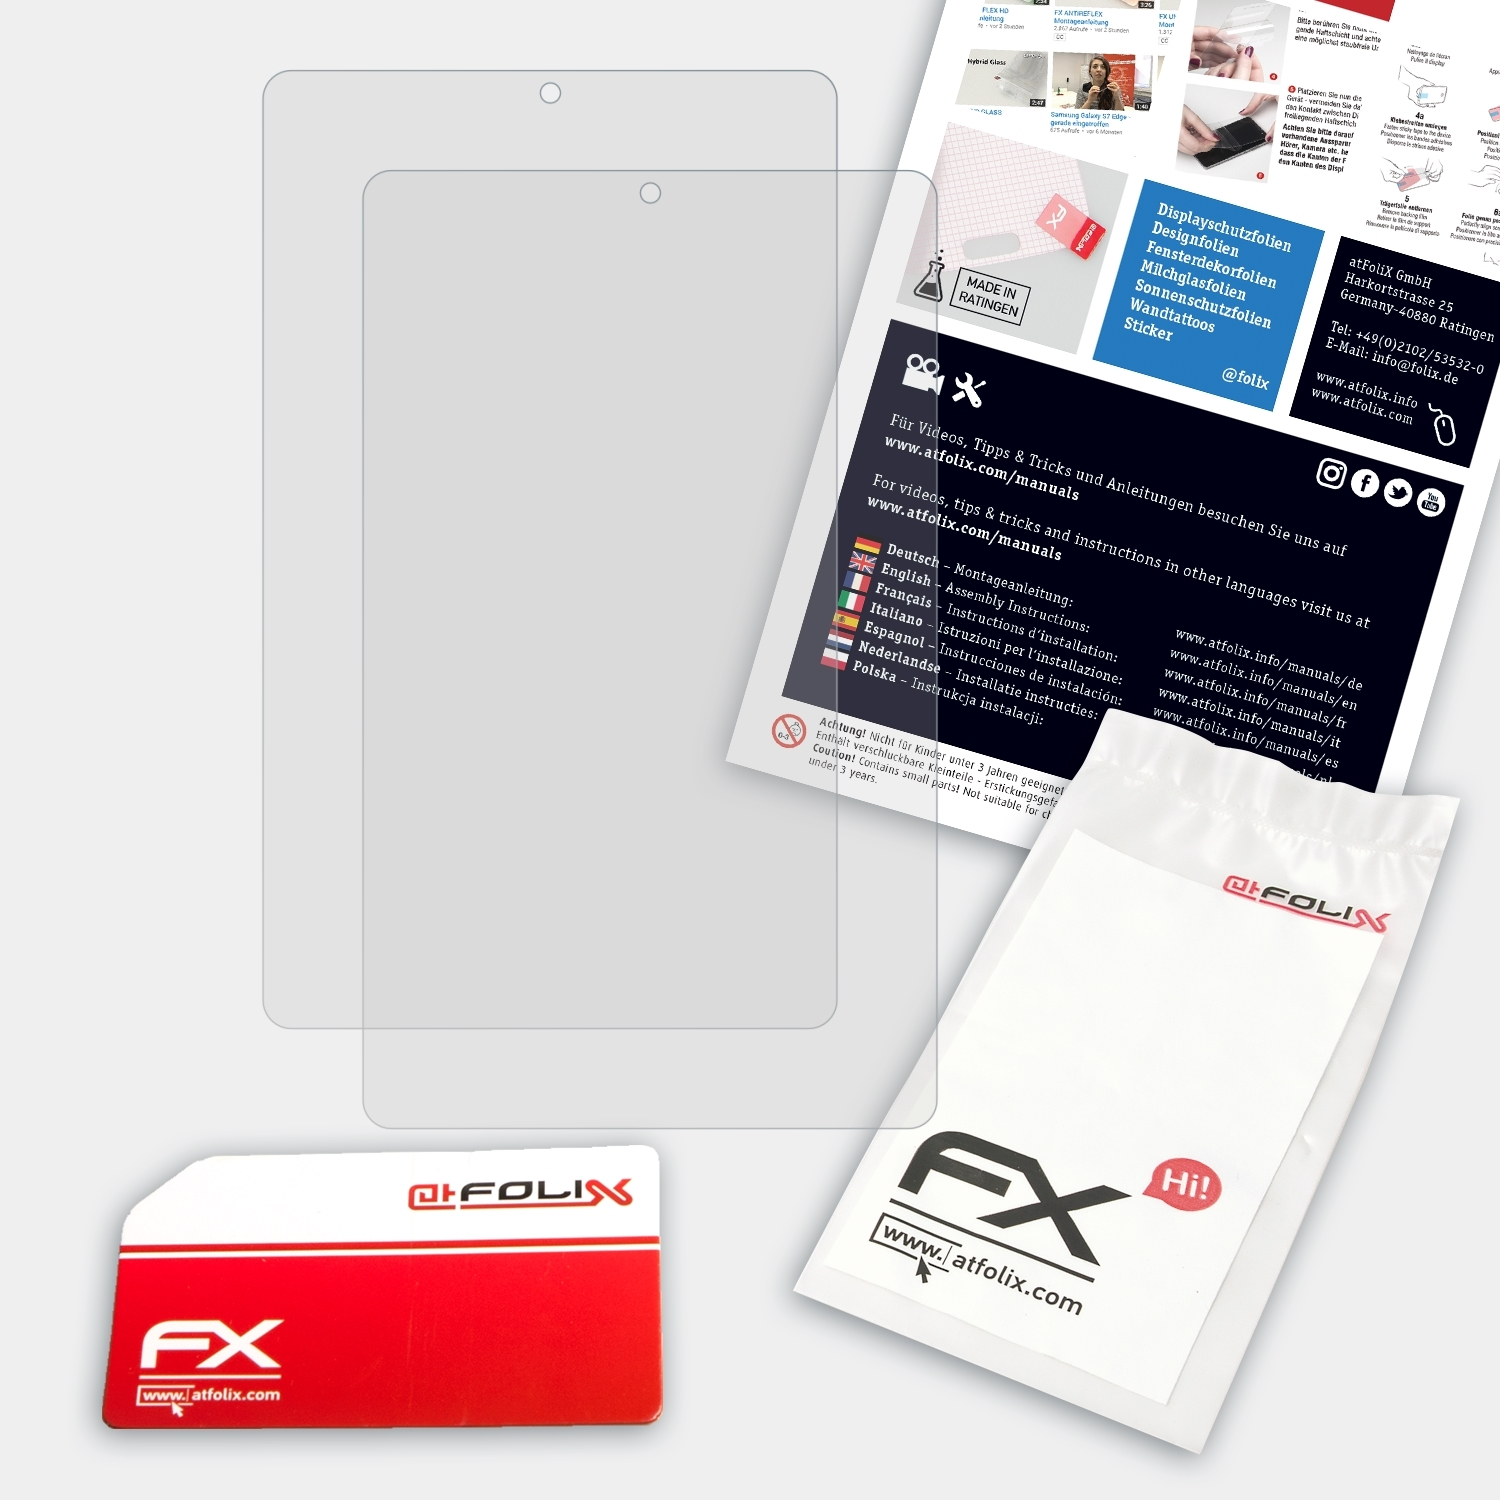 MediaPad FX-Antireflex Displayschutz(für M6 Huawei 2x ATFOLIX 8.4)